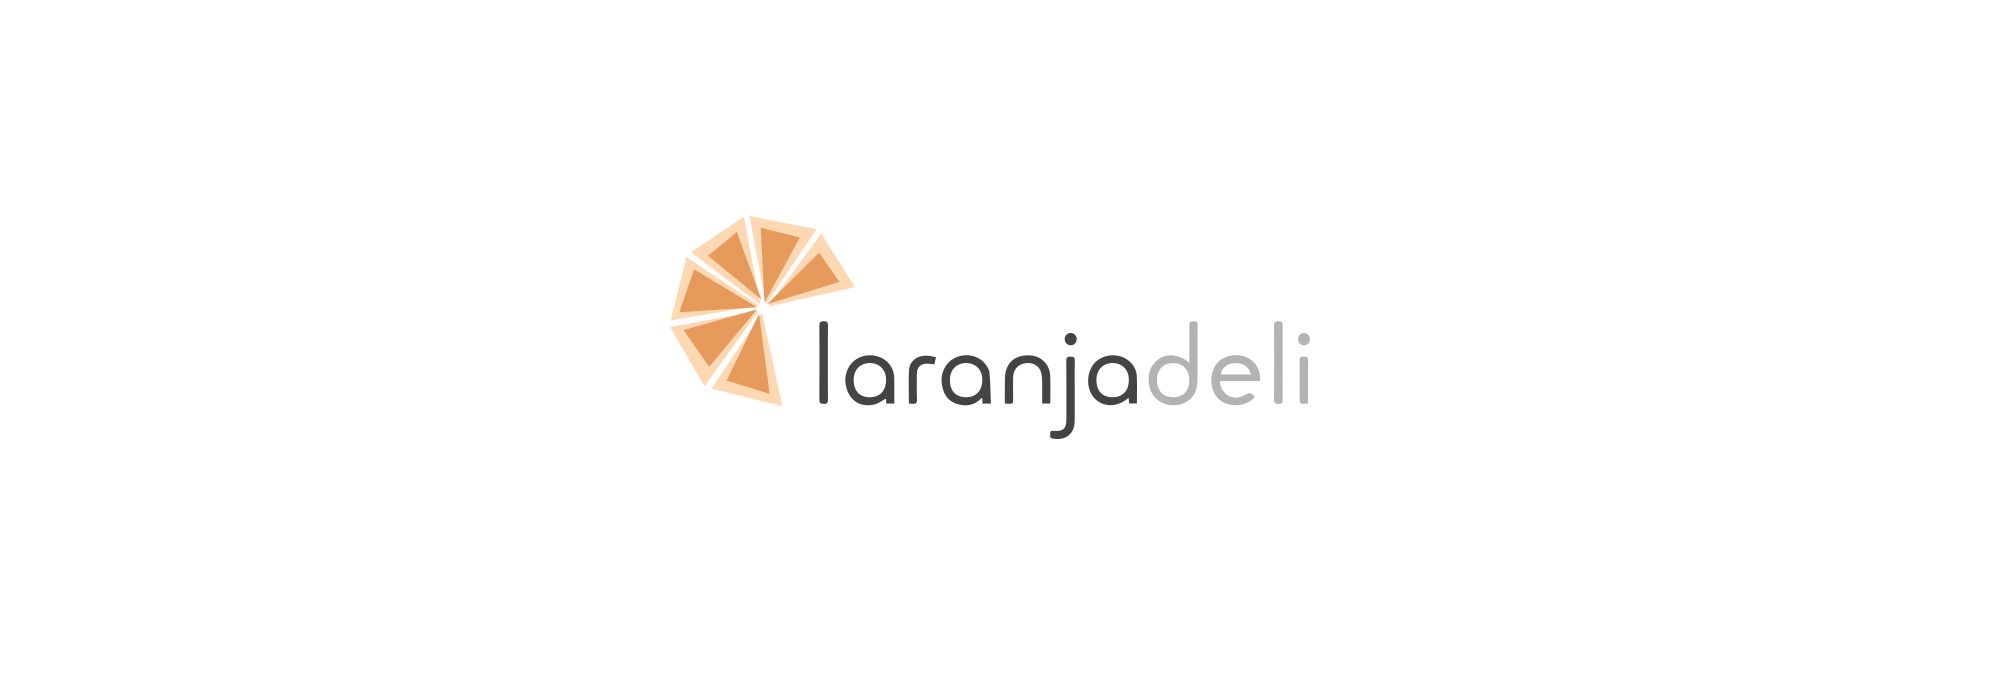 daniel-zito-laranjadeli-logo.jpg